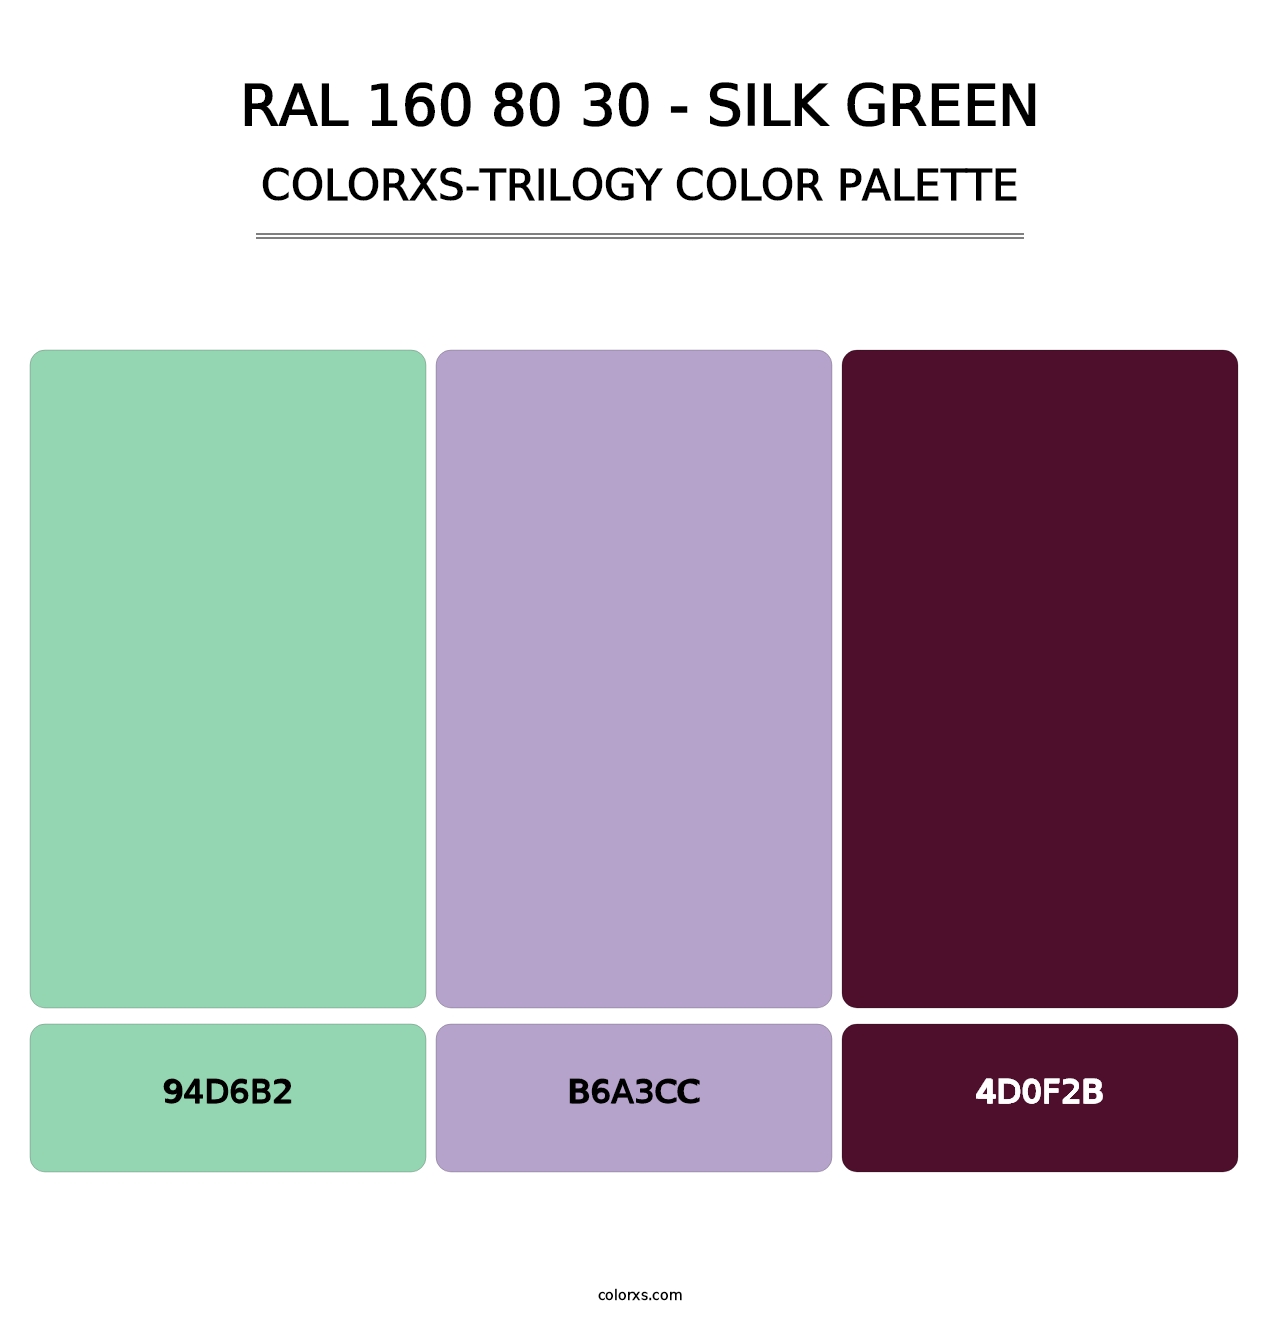 RAL 160 80 30 - Silk Green - Colorxs Trilogy Palette